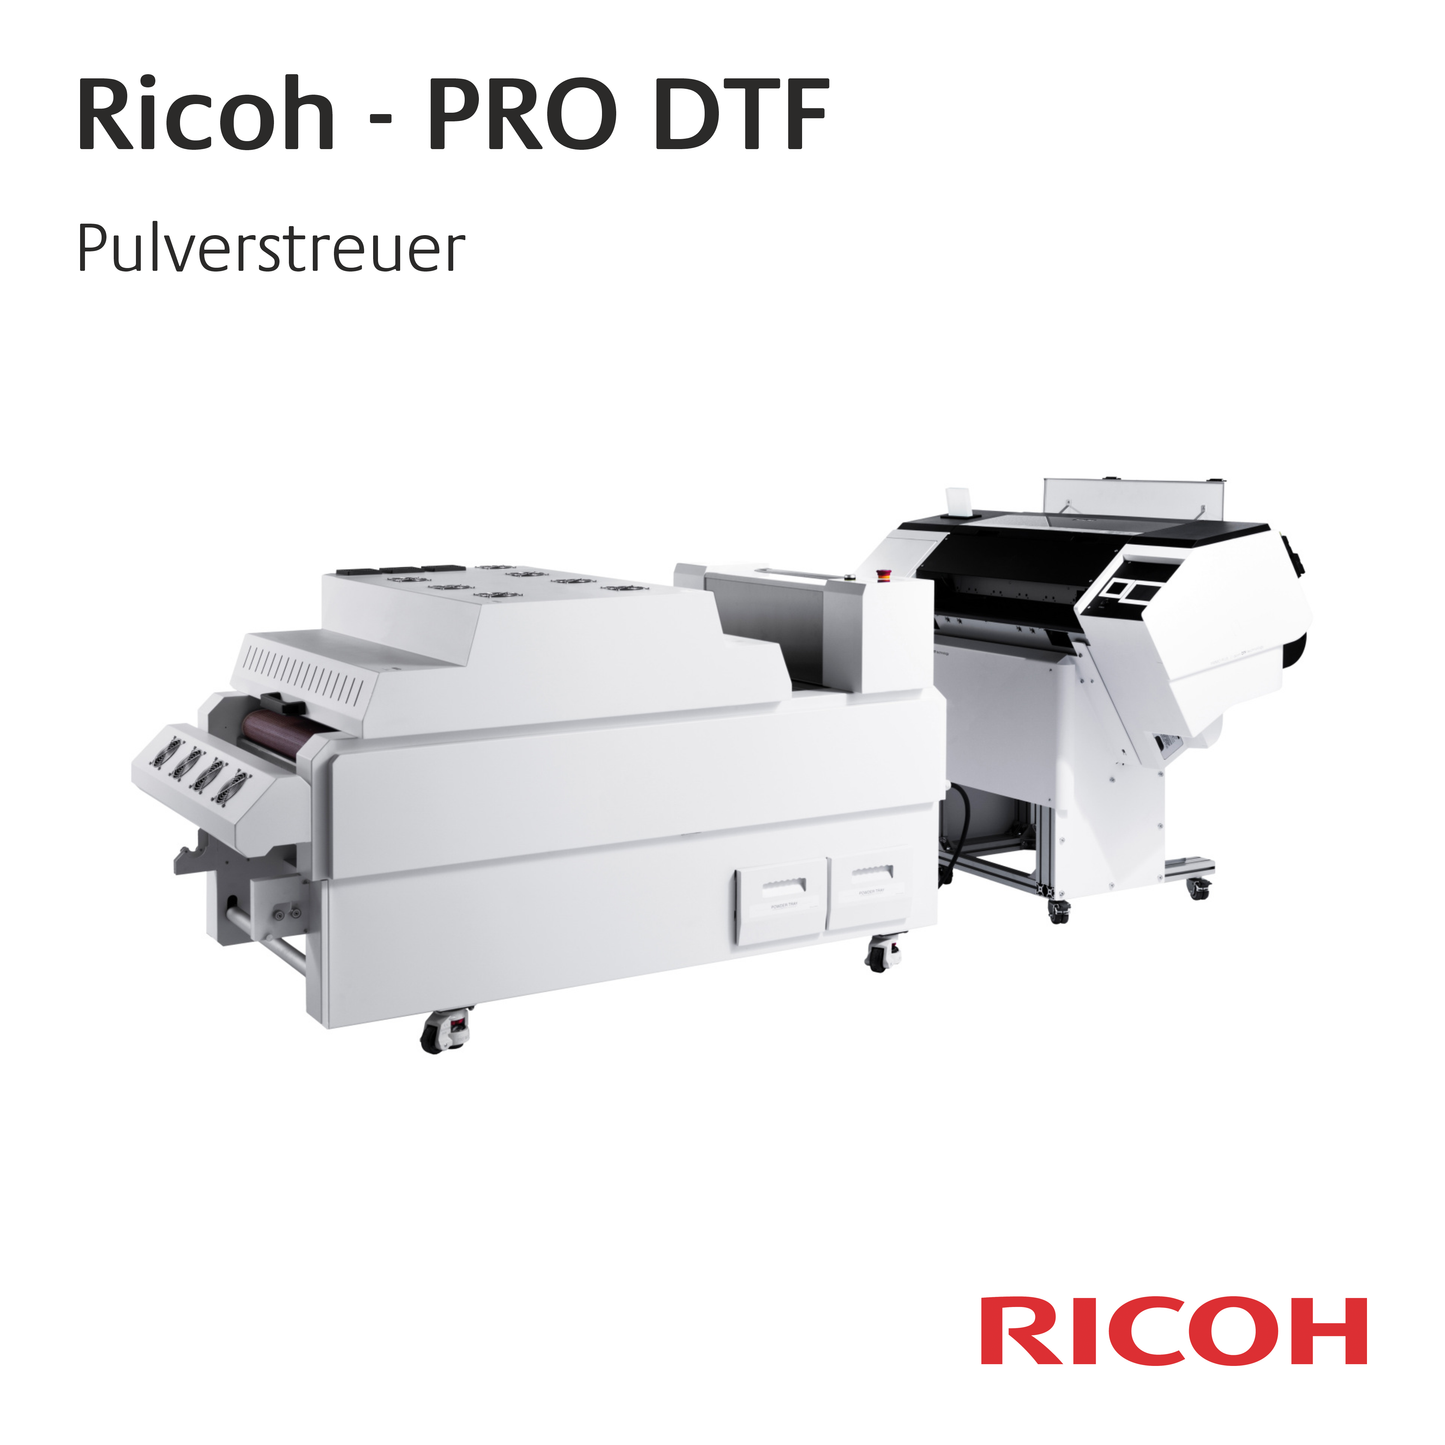 Ricoh PRO DTF - 60 cm Rollensystem - Pulverstreuer und Trockner